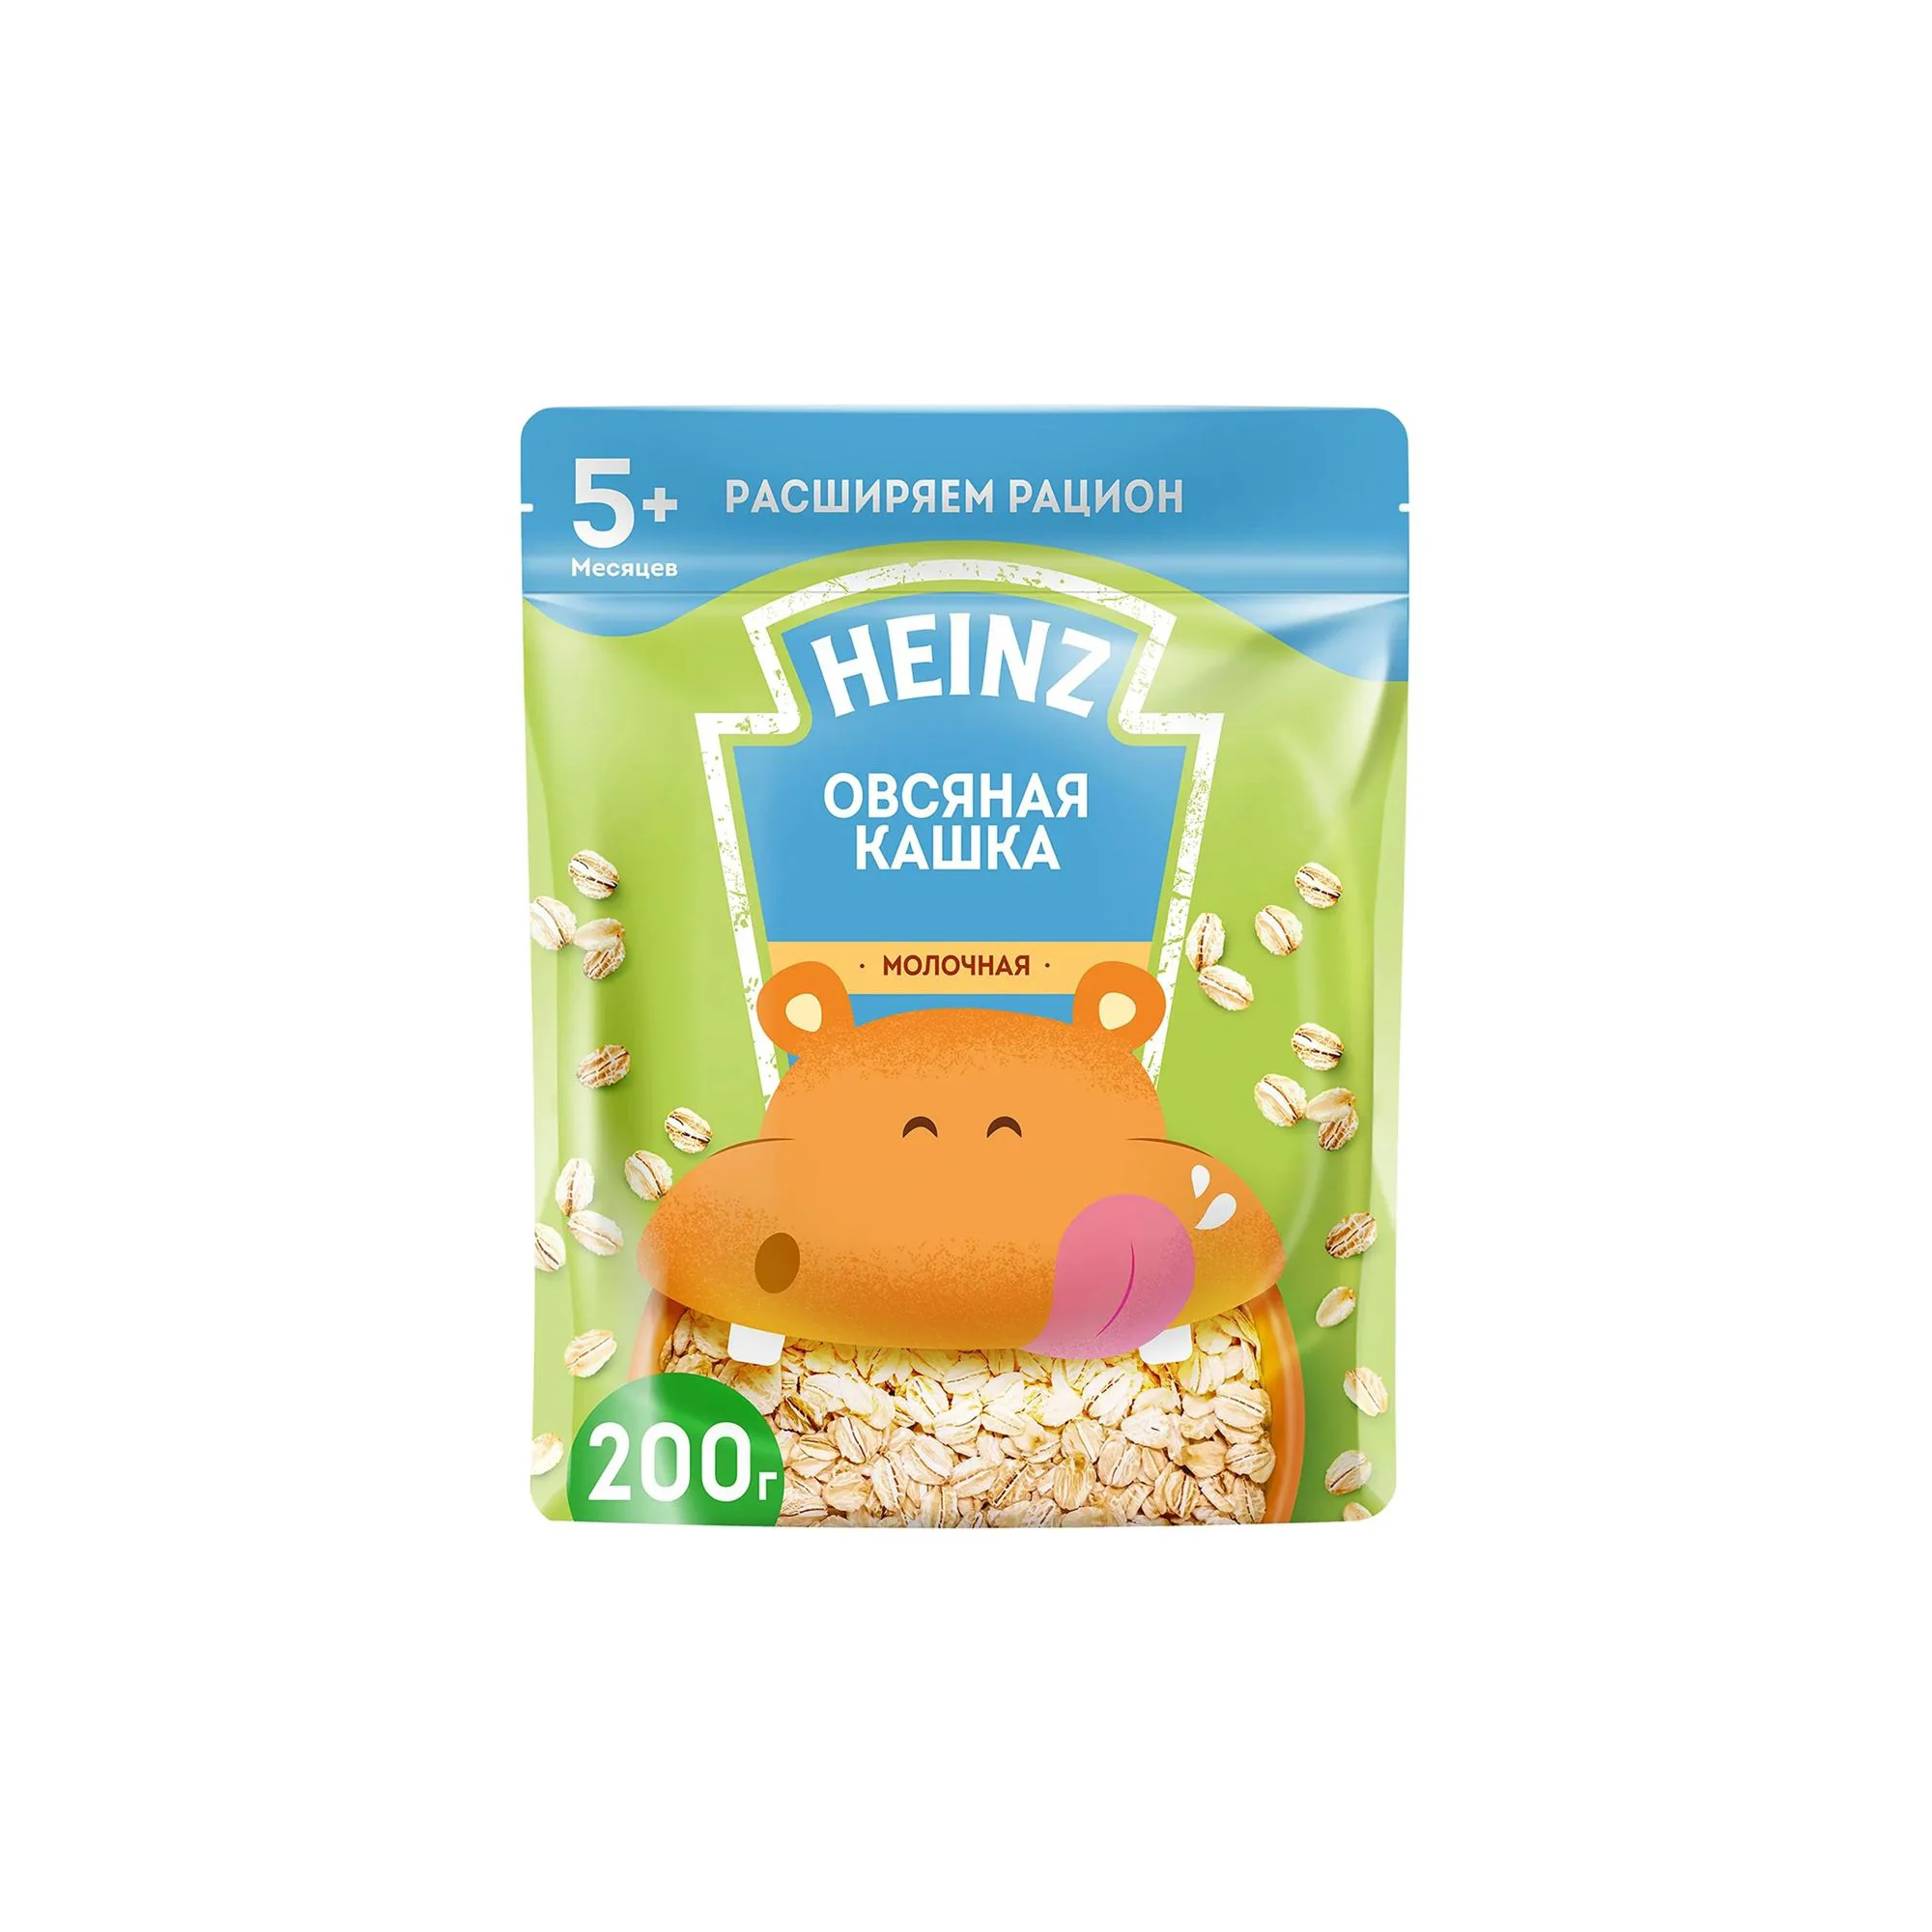 Овсяная кашка Heinz с молоком и Омега 3 (5+ мес.), 200 г